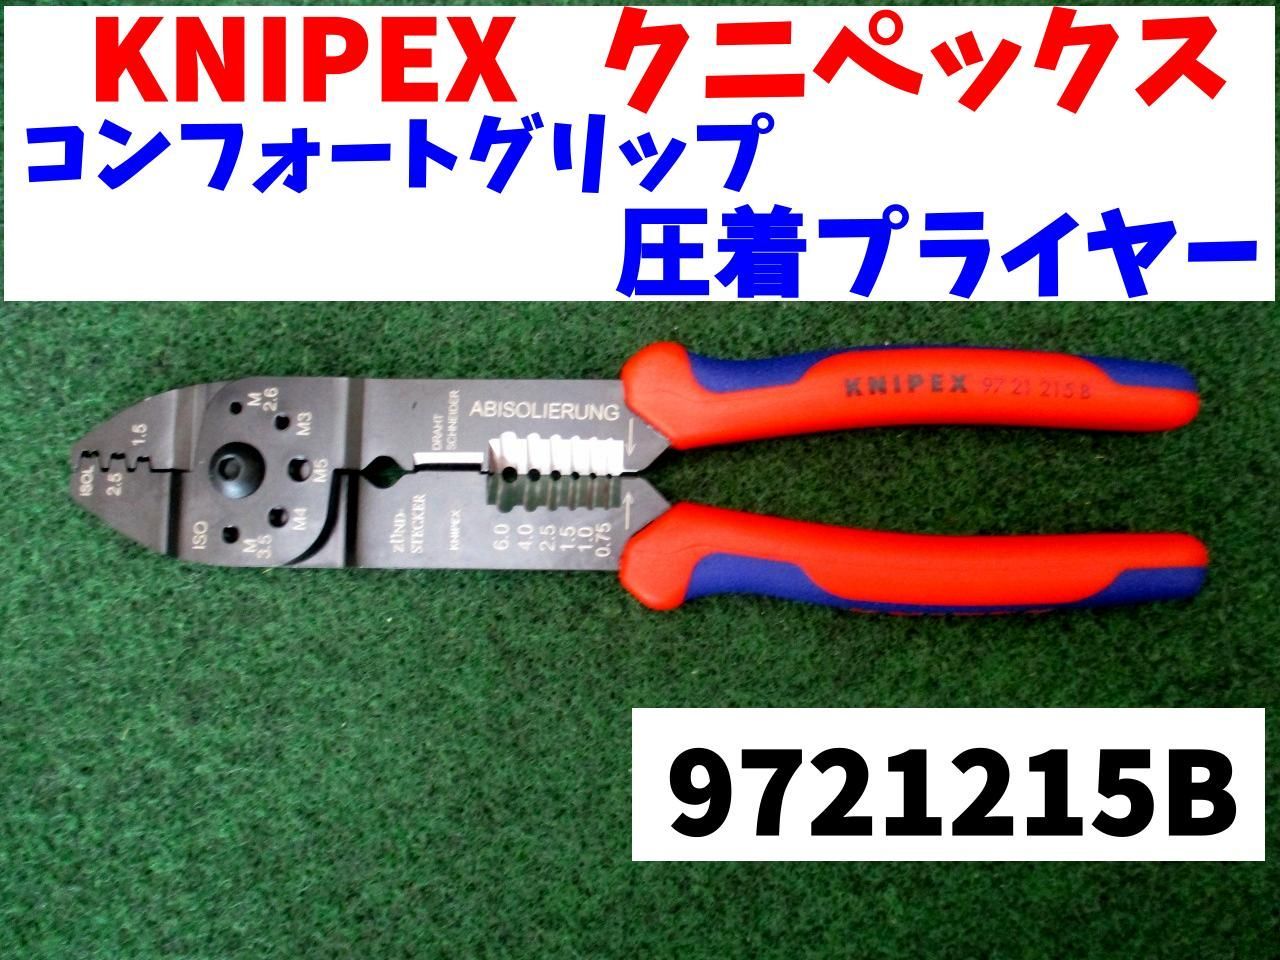 有名なブランド KNIPEX ハンドツール 9754-27 平行圧着ペンチ